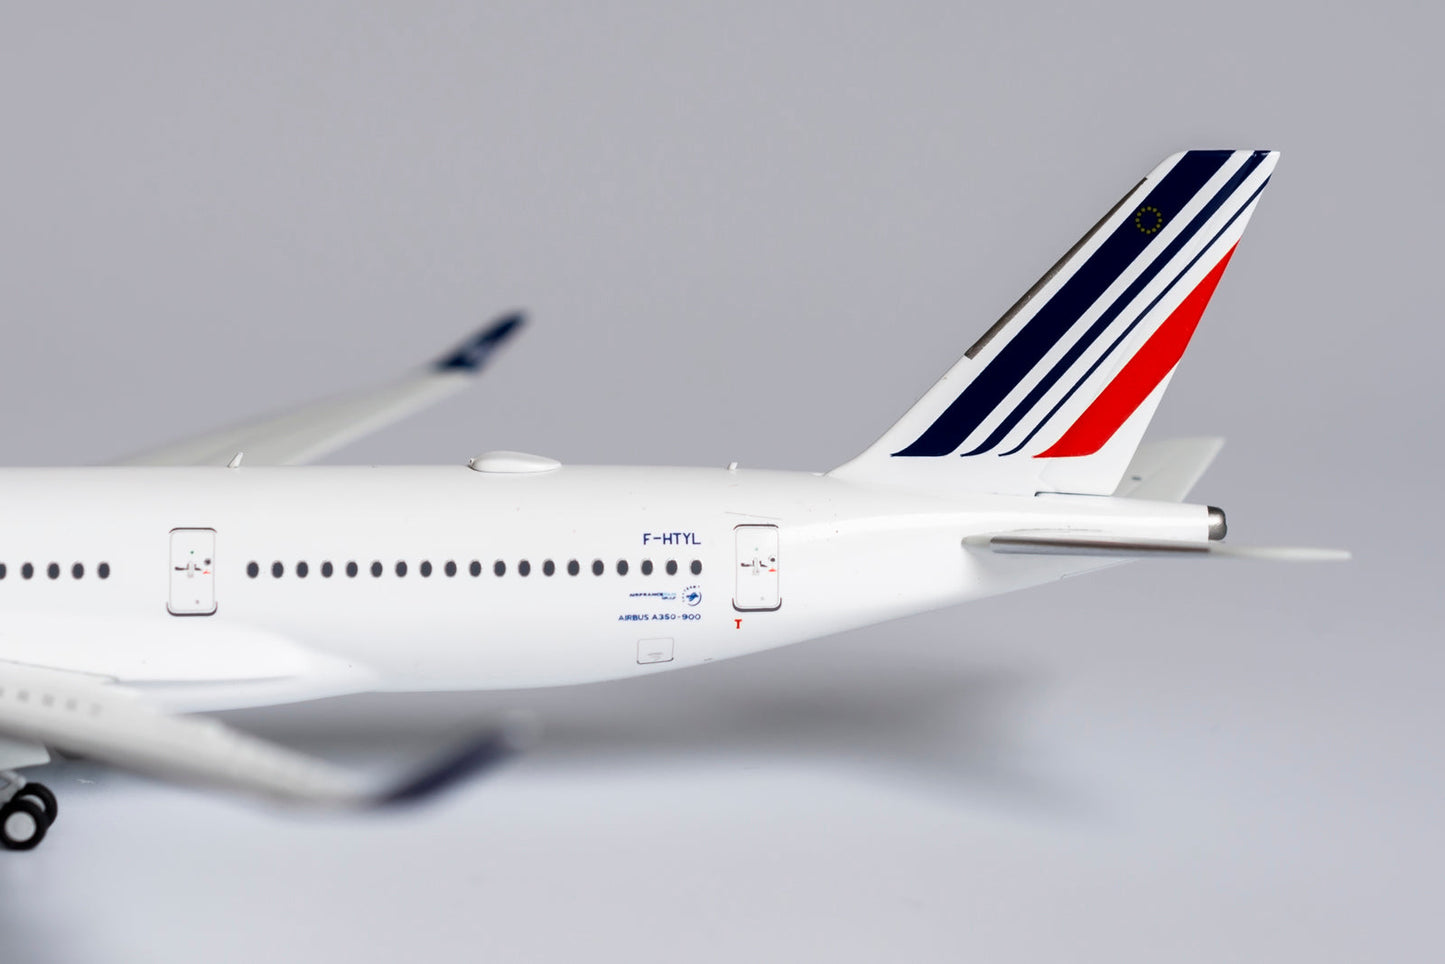 1/400 Air France A350-900 NG Models 39027